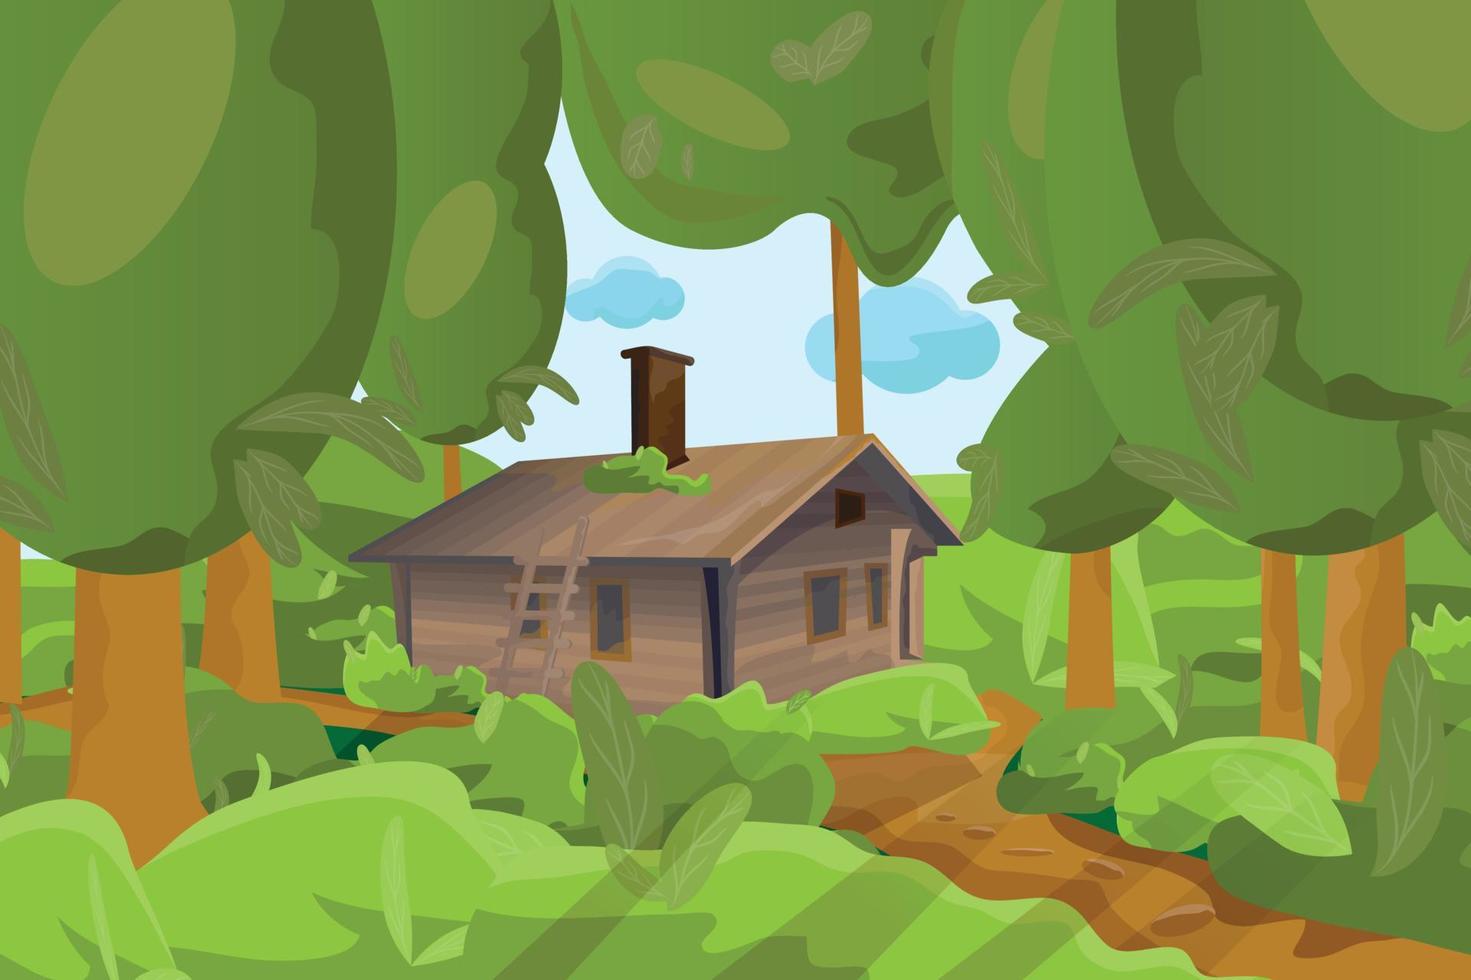 hölzern Single Log Haus und Grün Wald oder Urwald Thema Vektor Illustration schön Hintergrund.